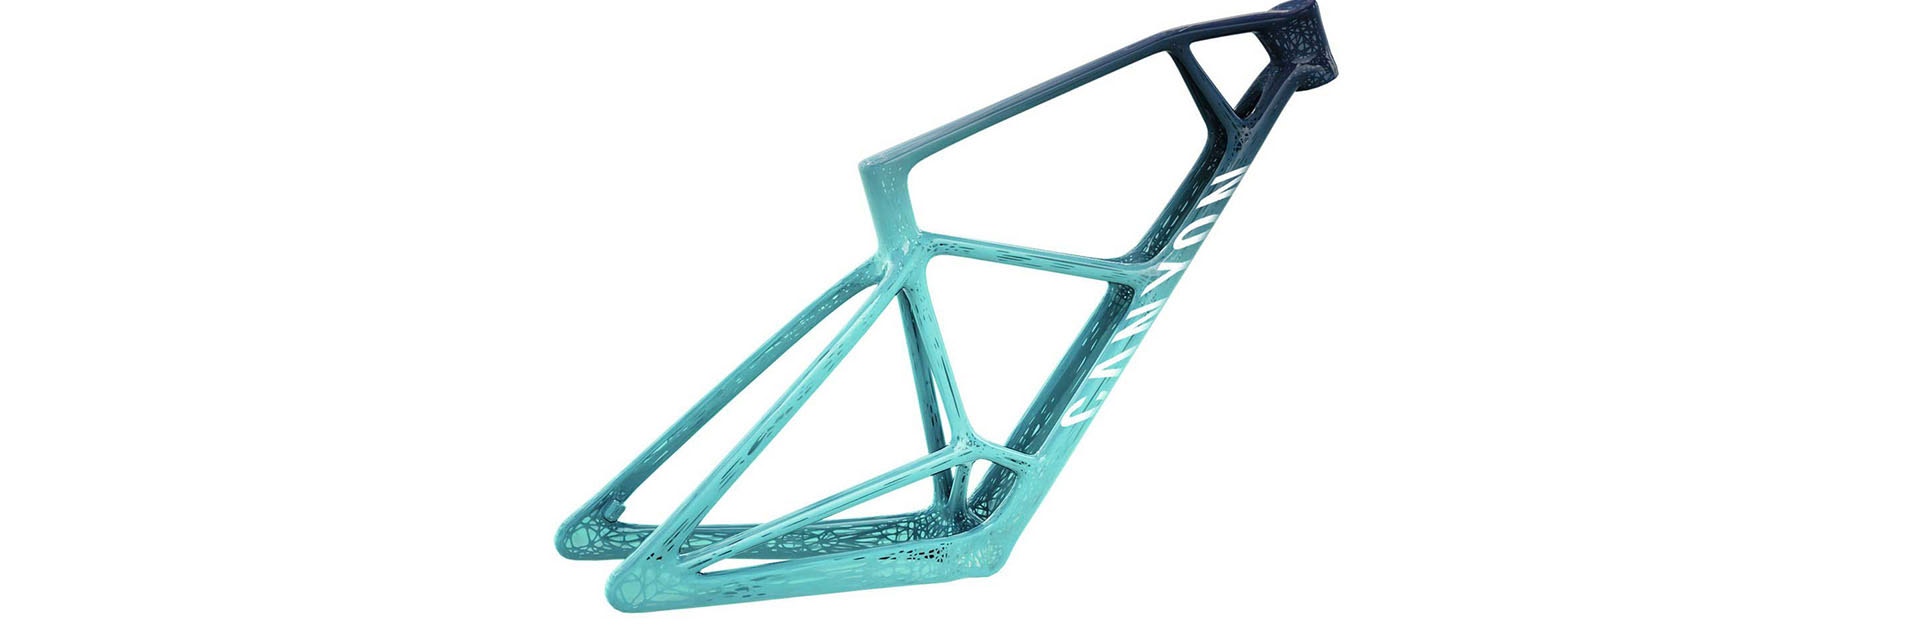 3D-printed bike frame